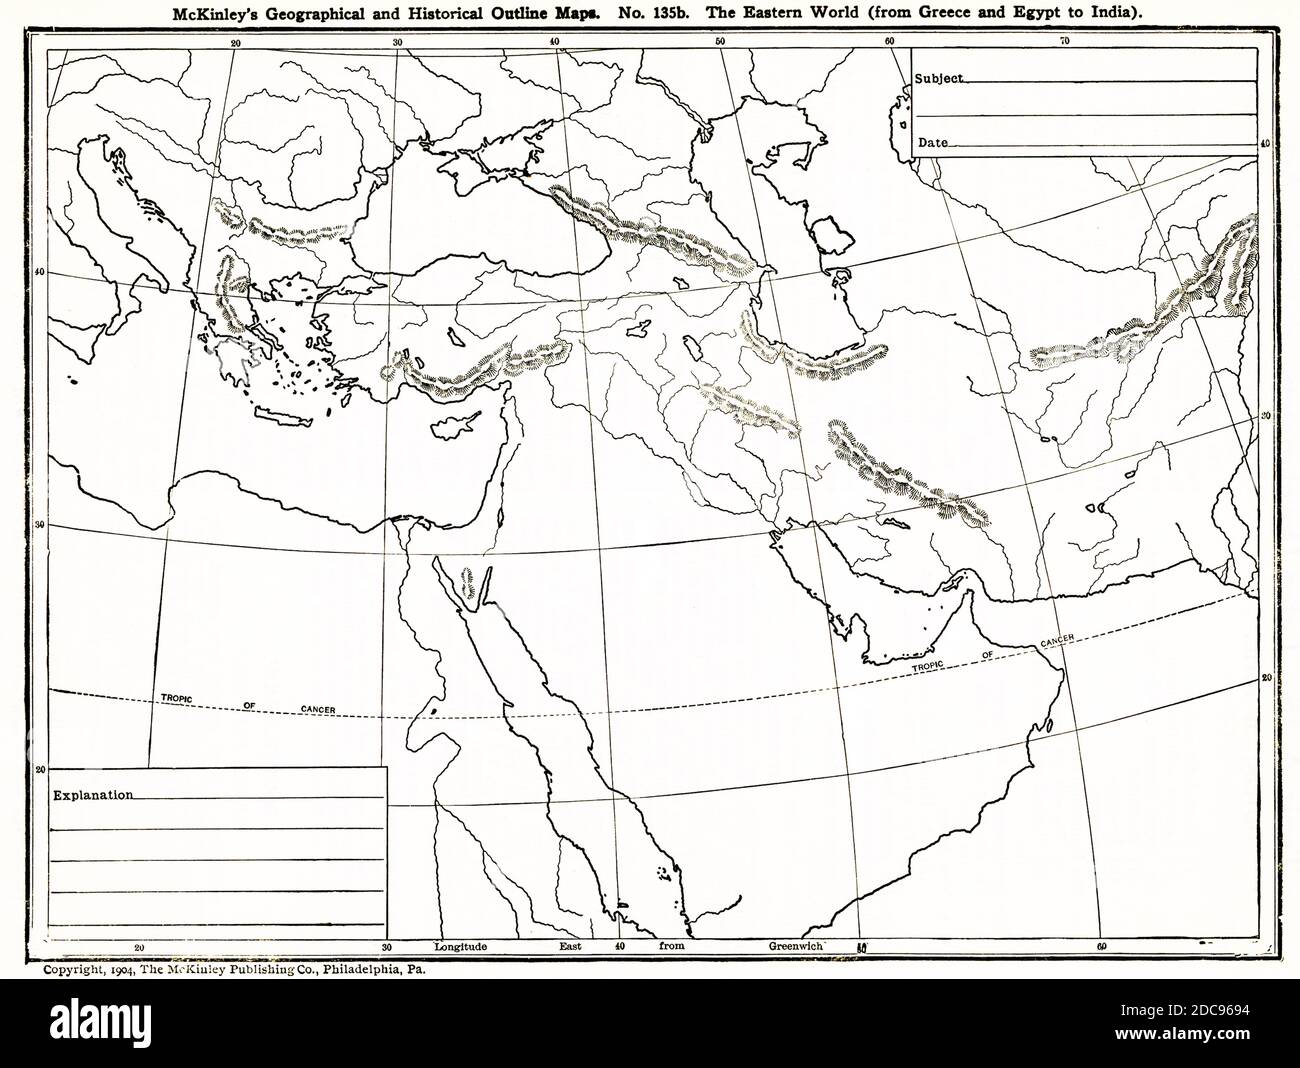 Questa mappa geografica e storica mostra il mondo orientale dalla Grecia all'Egitto all'India. Foto Stock